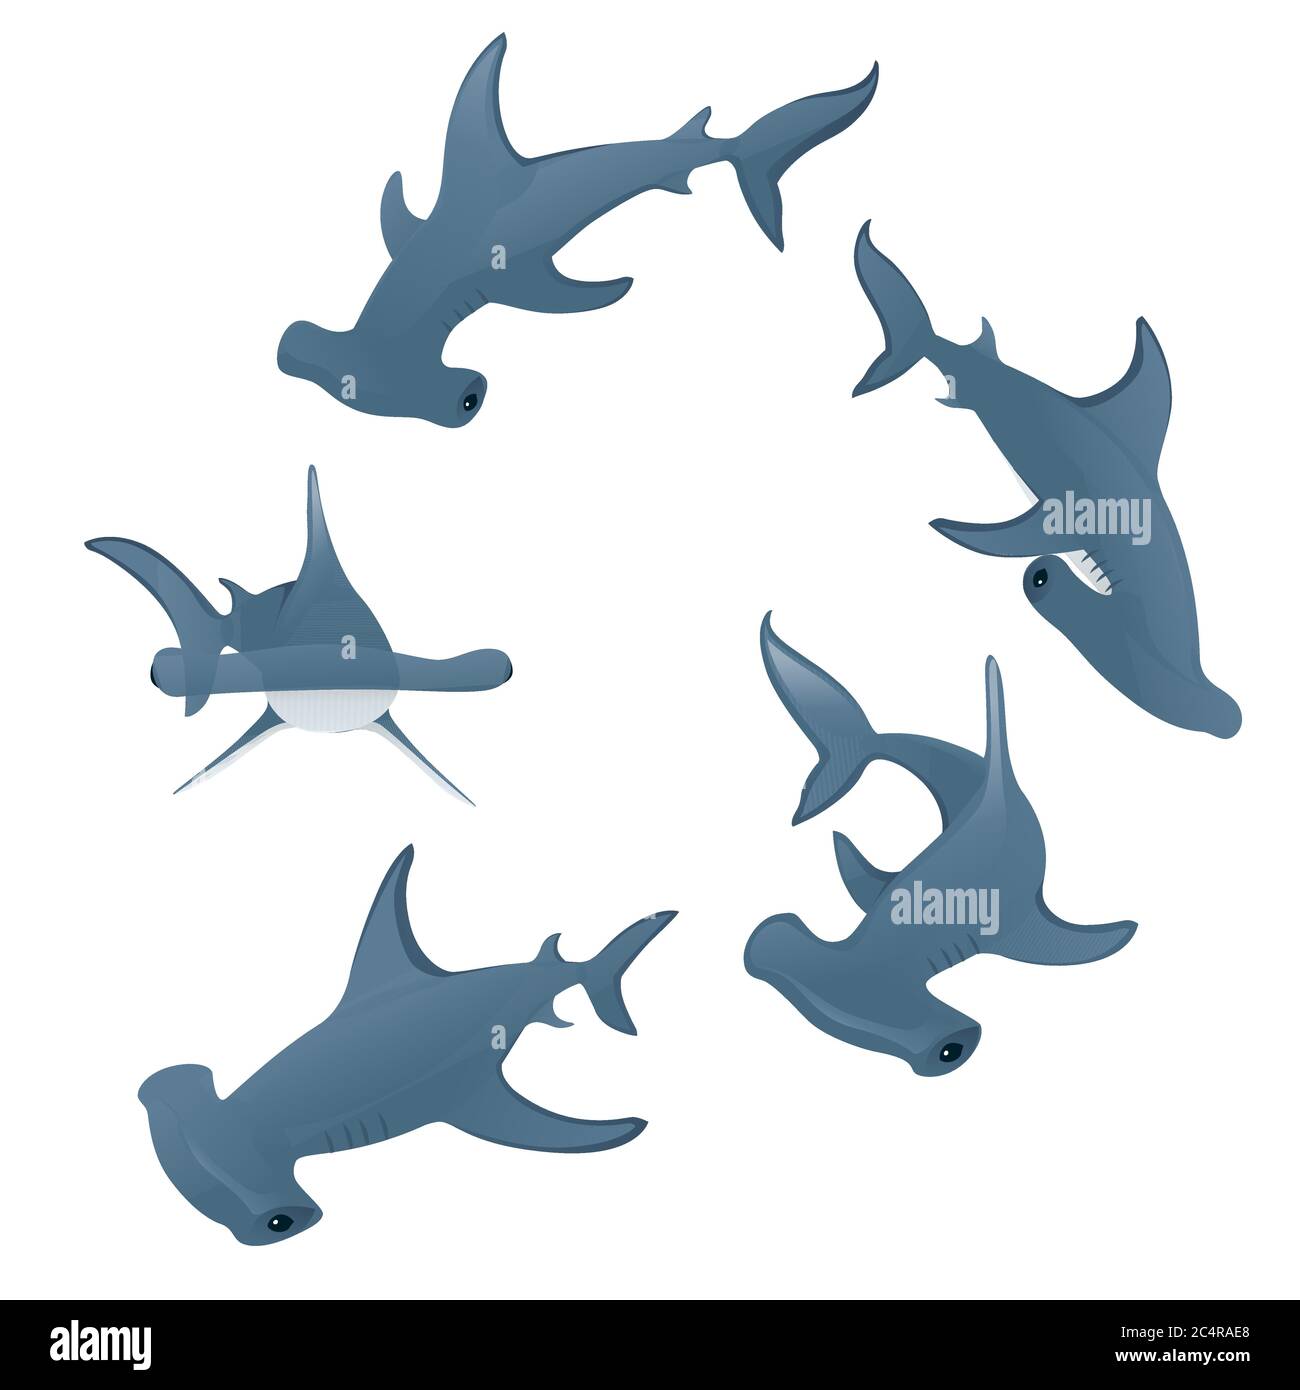 Hammerhaie schwimmen in einem Kreis Unterwasser-Riese Tier einfache Cartoon Charakter Design flache Vektor-Illustration auf weißem Hintergrund Stock Vektor